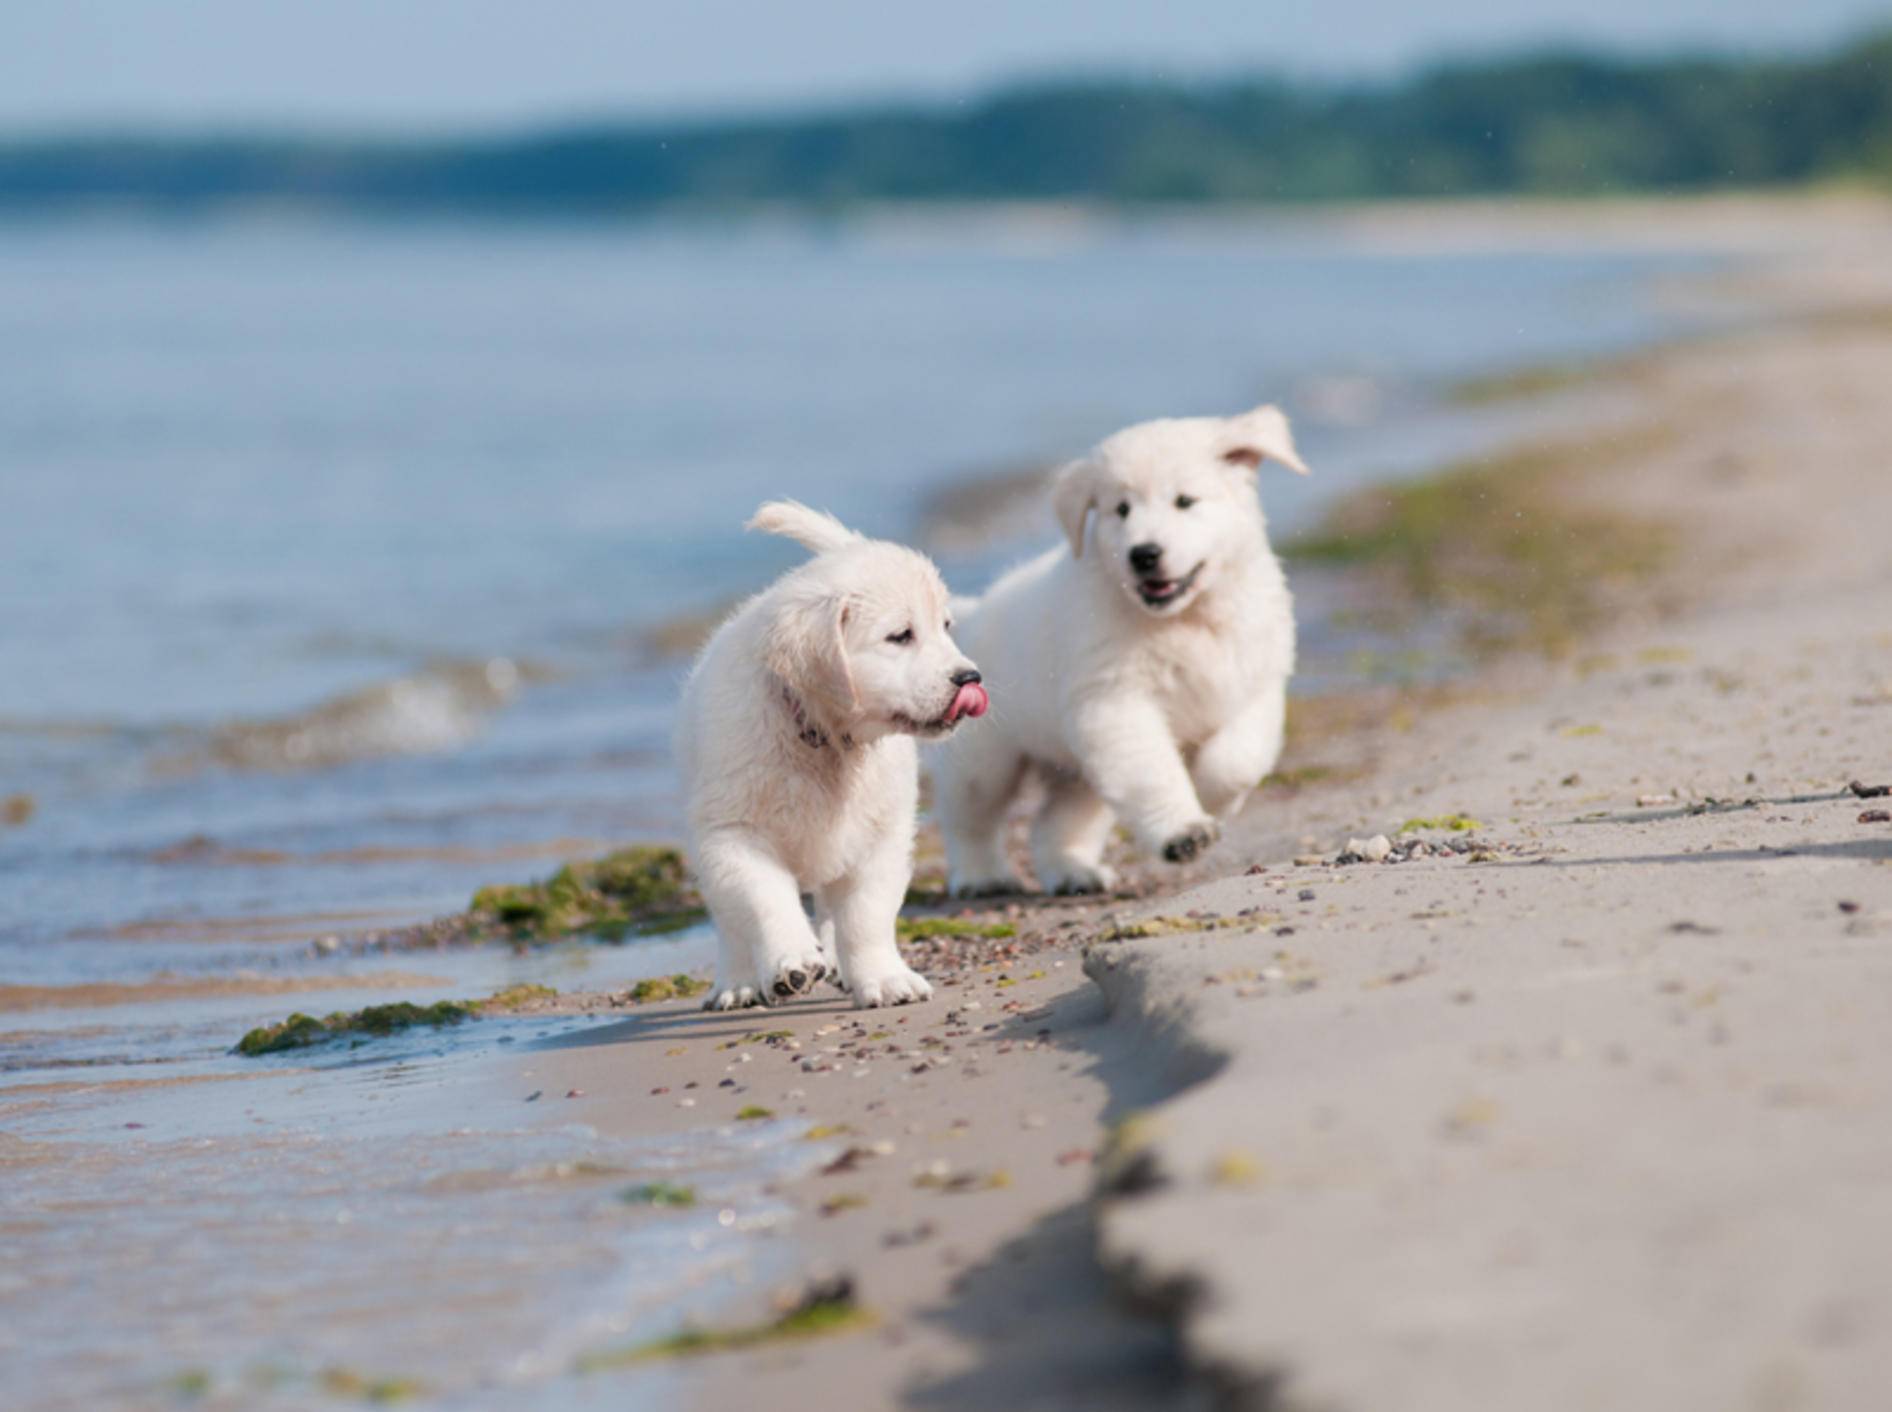 Hui, das macht Spaß! Zwei süße Golden Retriever Welpen am Hundestrand – Shutterstock / otsphoto